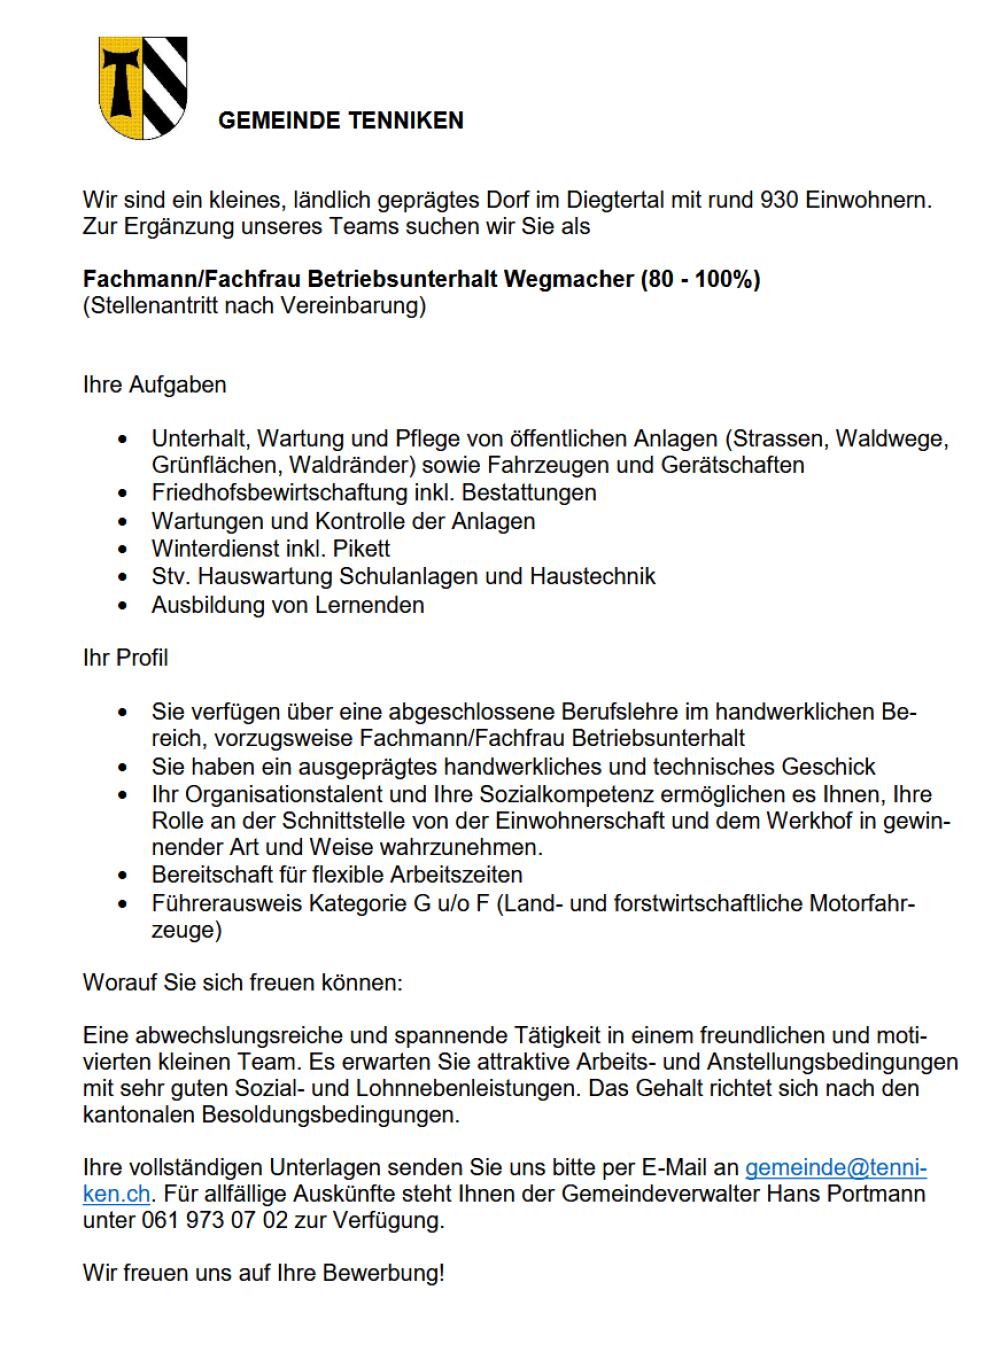 Fachmann/Fachfrau Betriebsunterhalt Wegmacher (80 - 100%) (1/1)